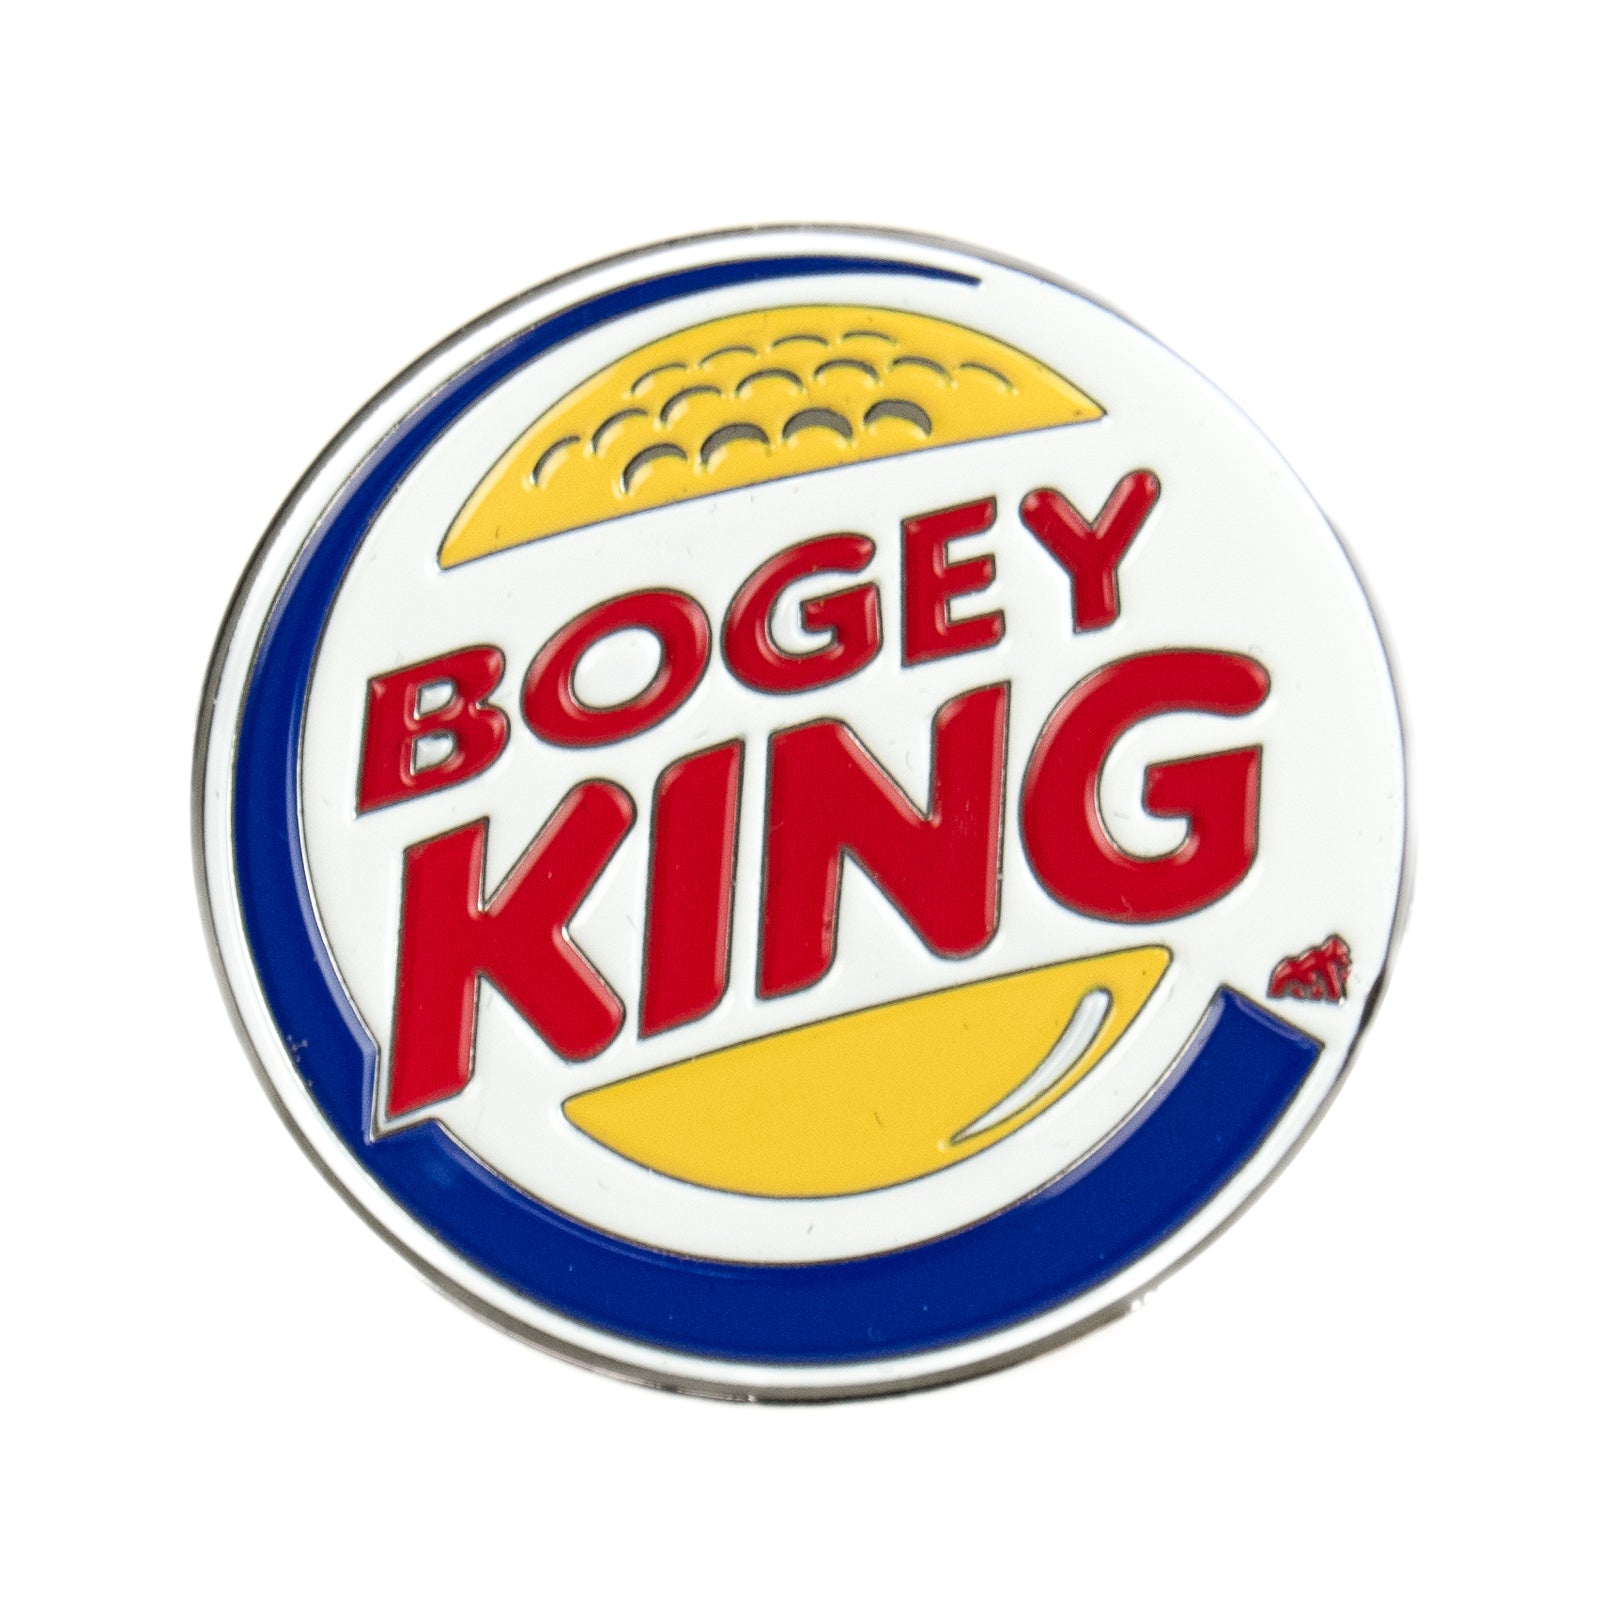 Bogey King Marker